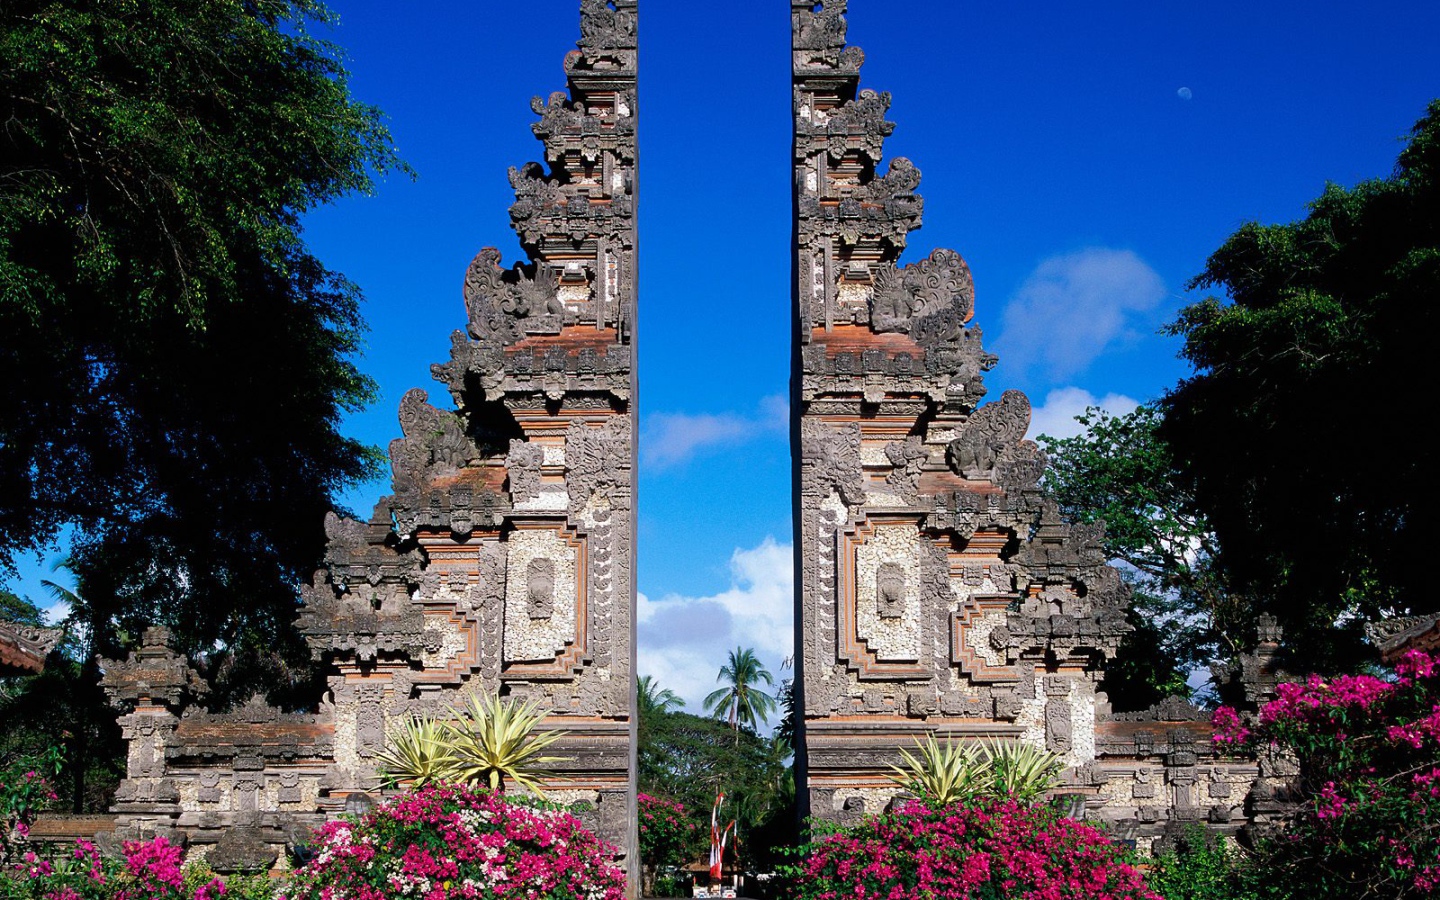 Бали / Индонезия